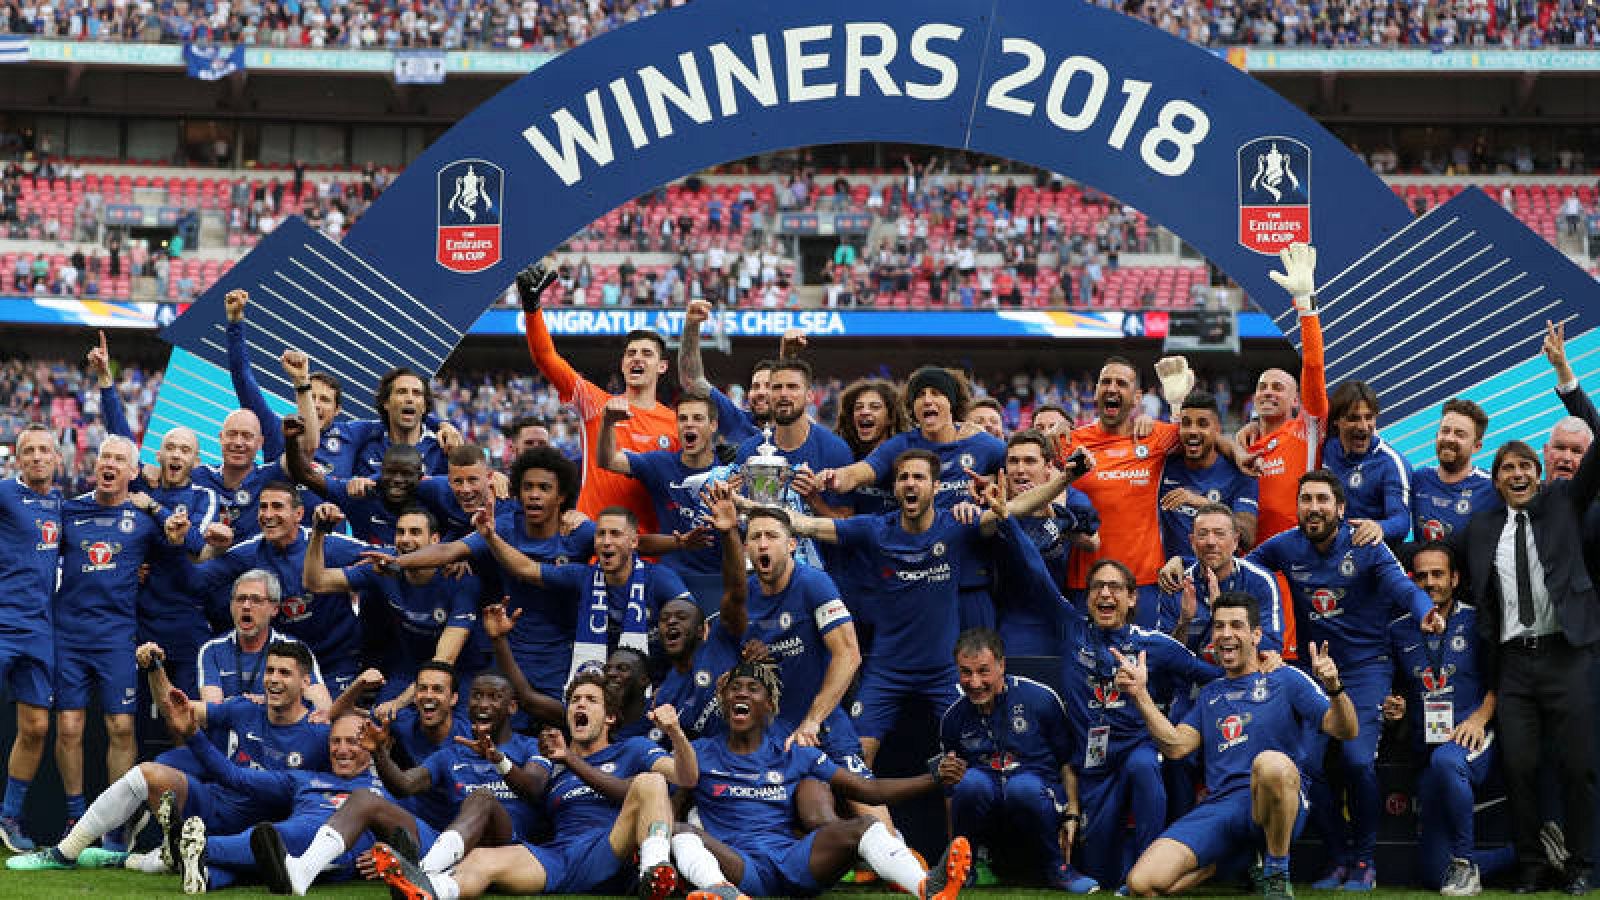 El Chelsea celebra su FA Cup 2018.